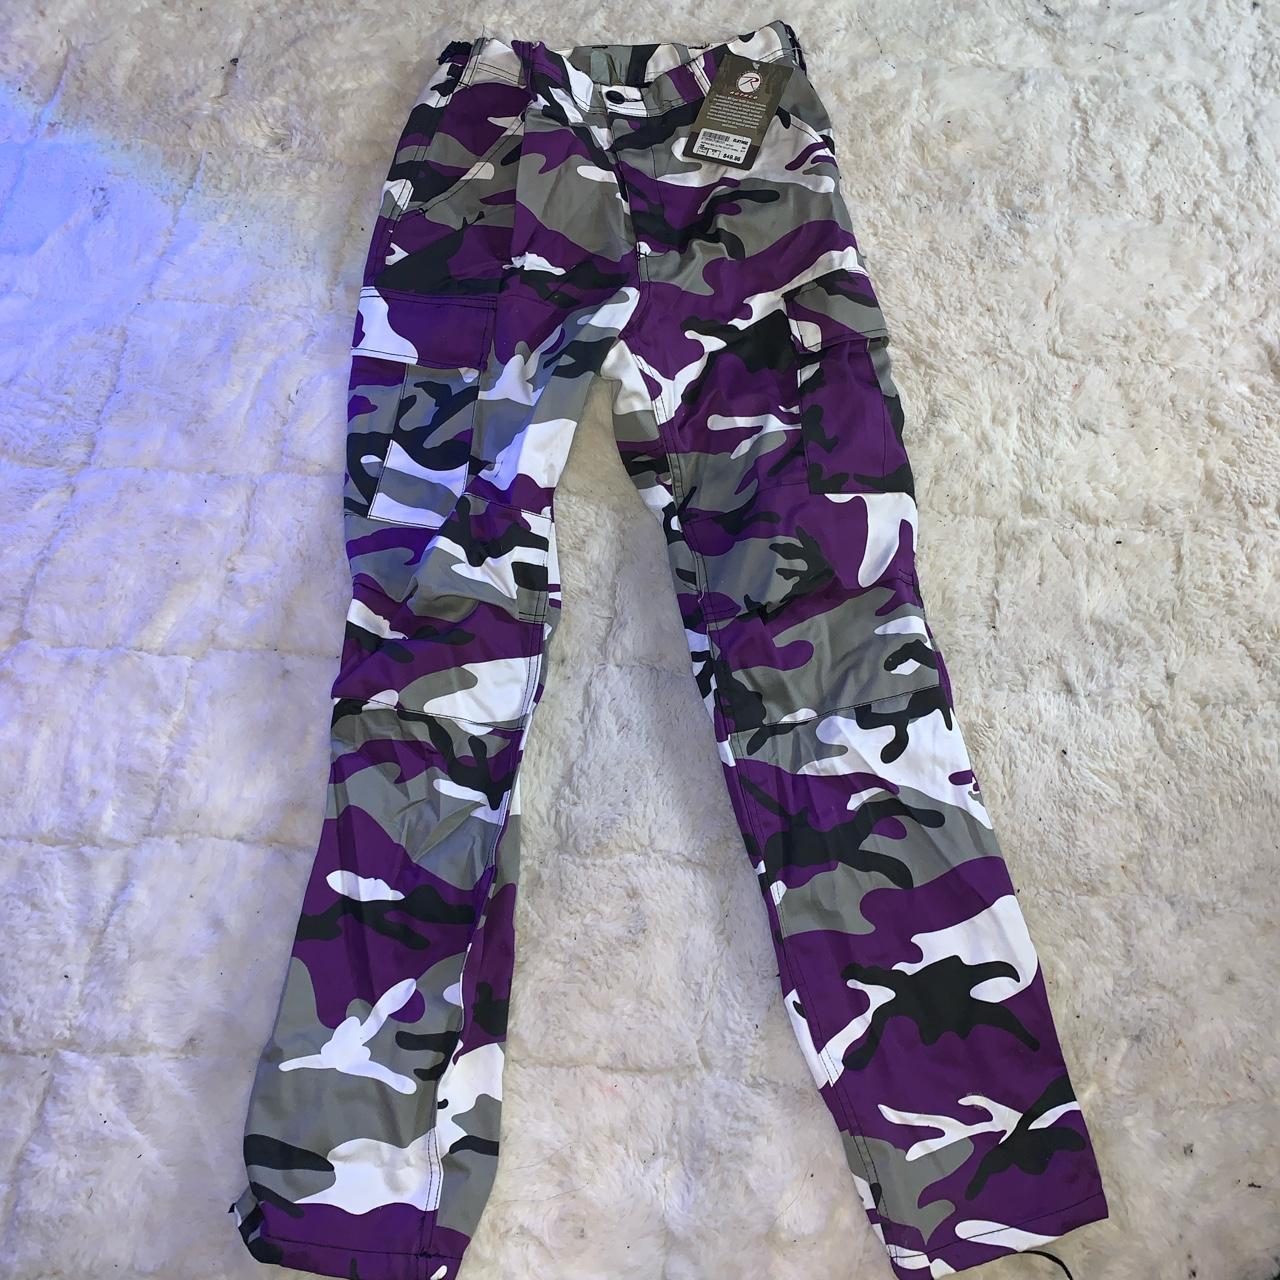 Purple Camouflage BDUs (Pants)